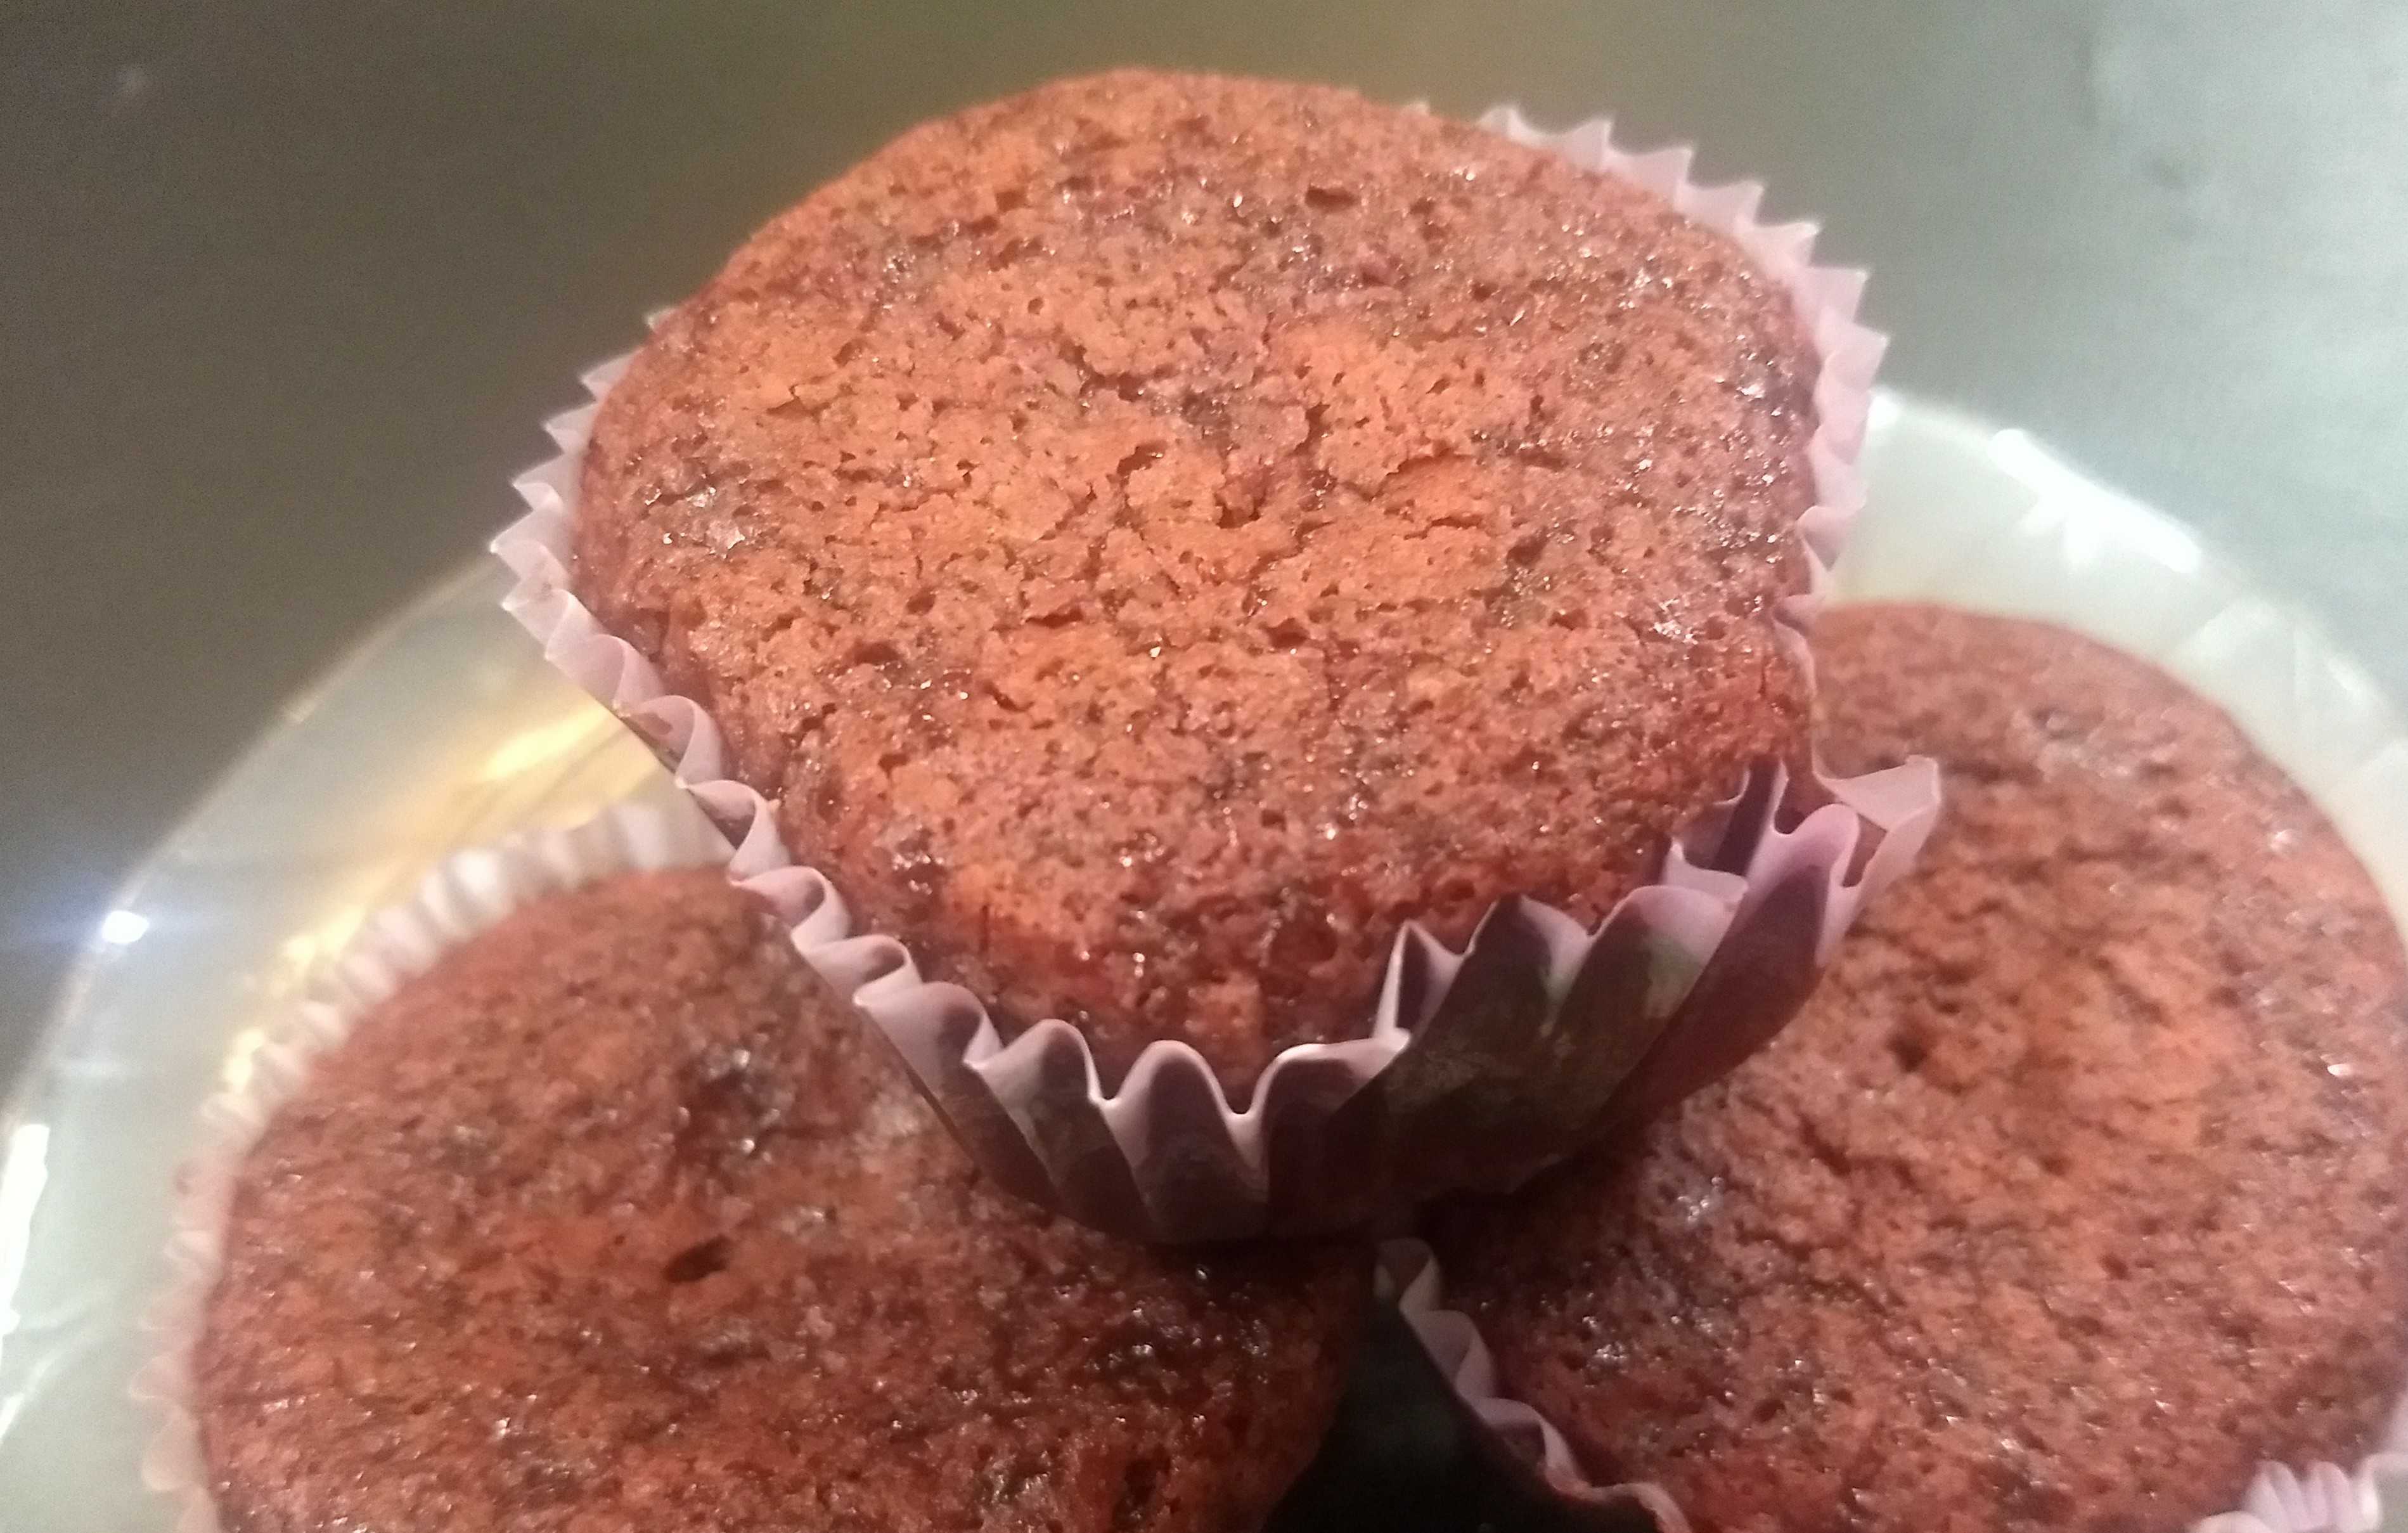 Eggless Red Velvet Cupcakes